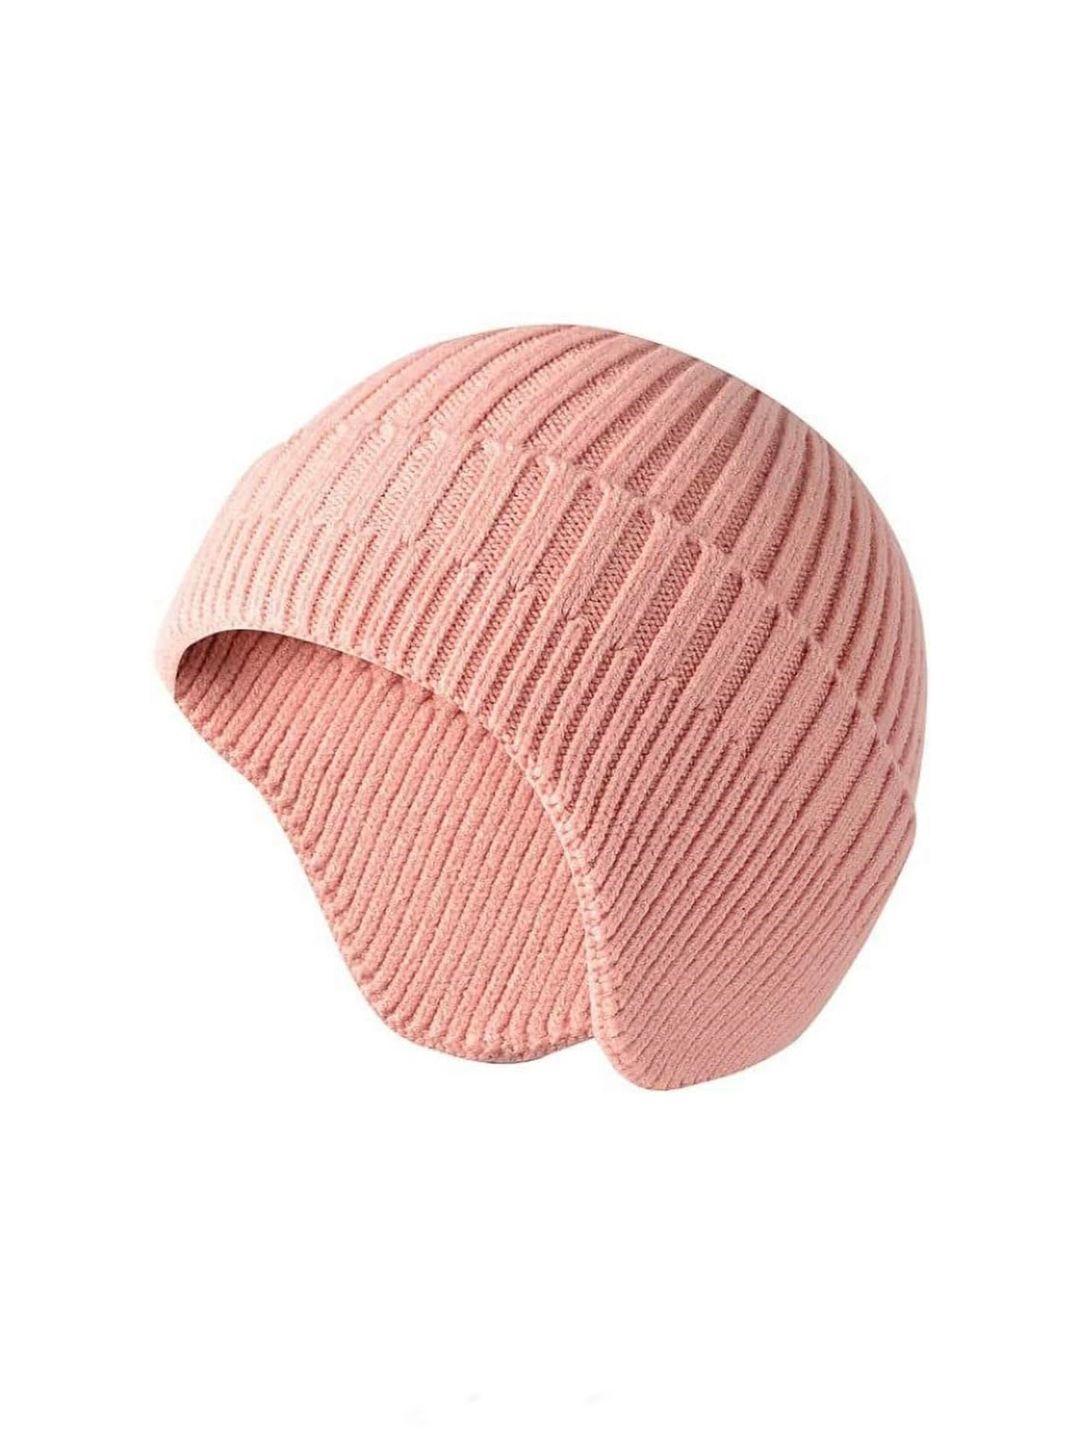 gajraj unisex woolen knitted earflap cap